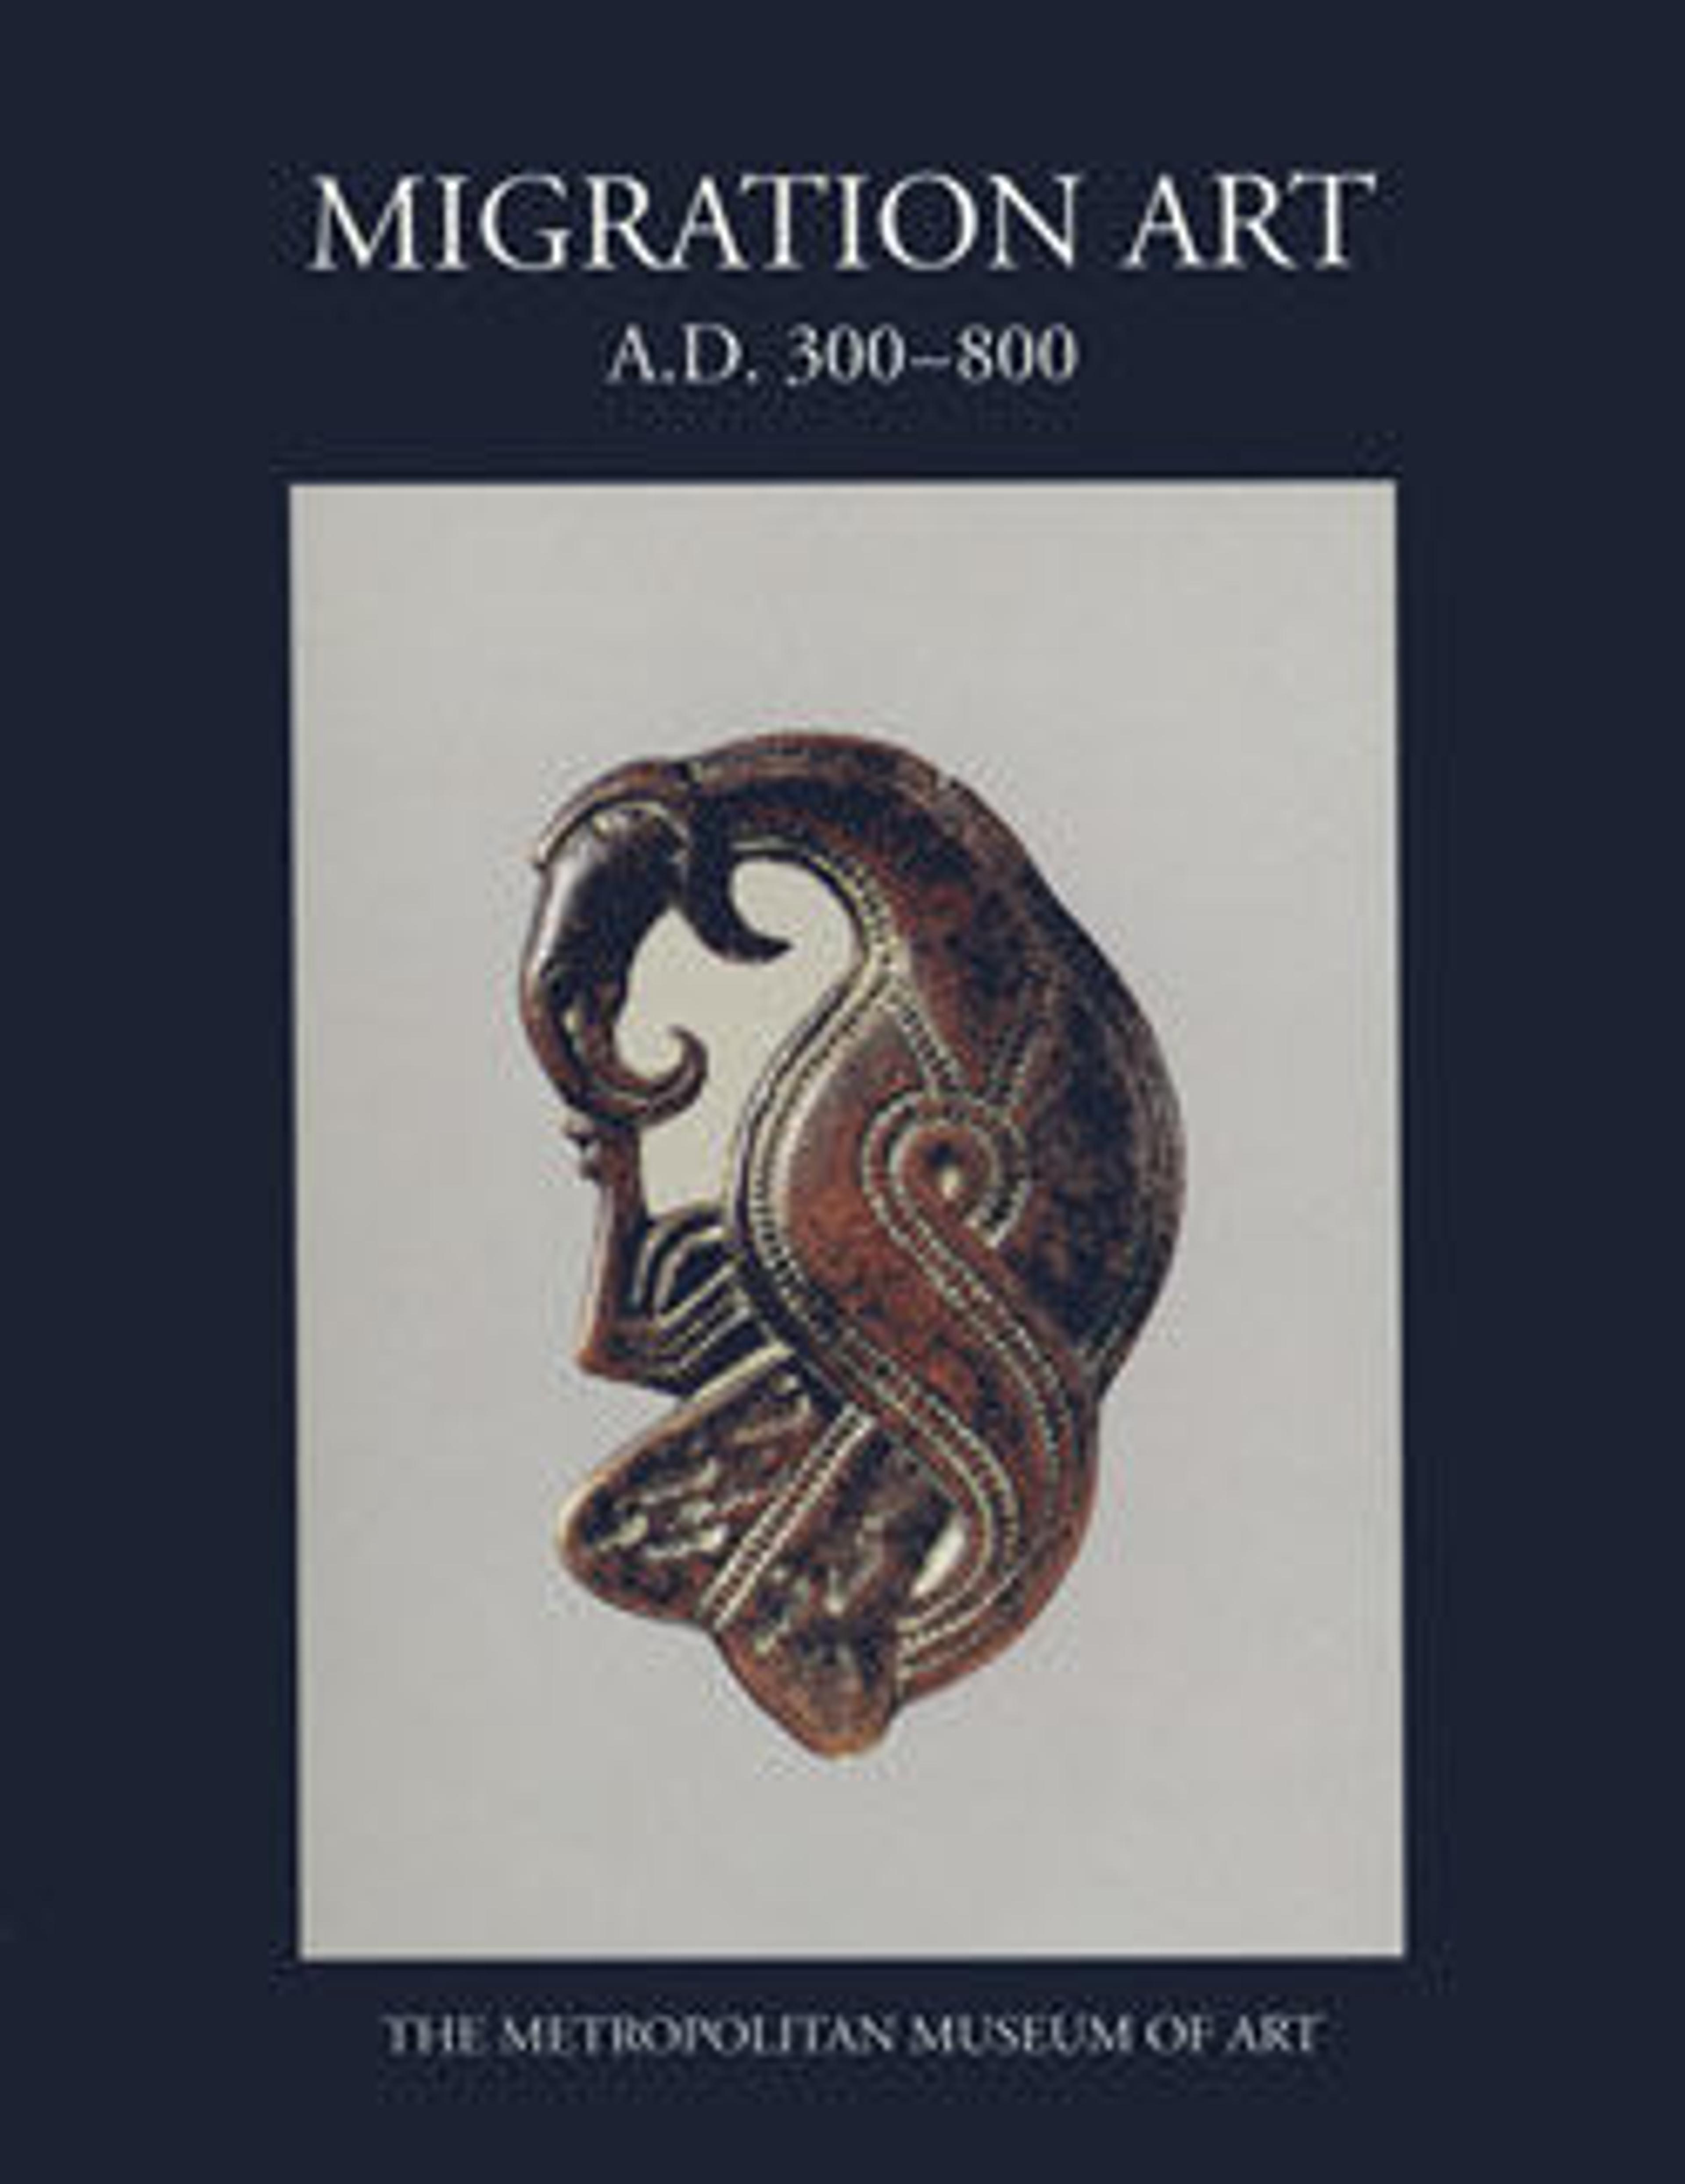 Migration Art, A.D. 300-800